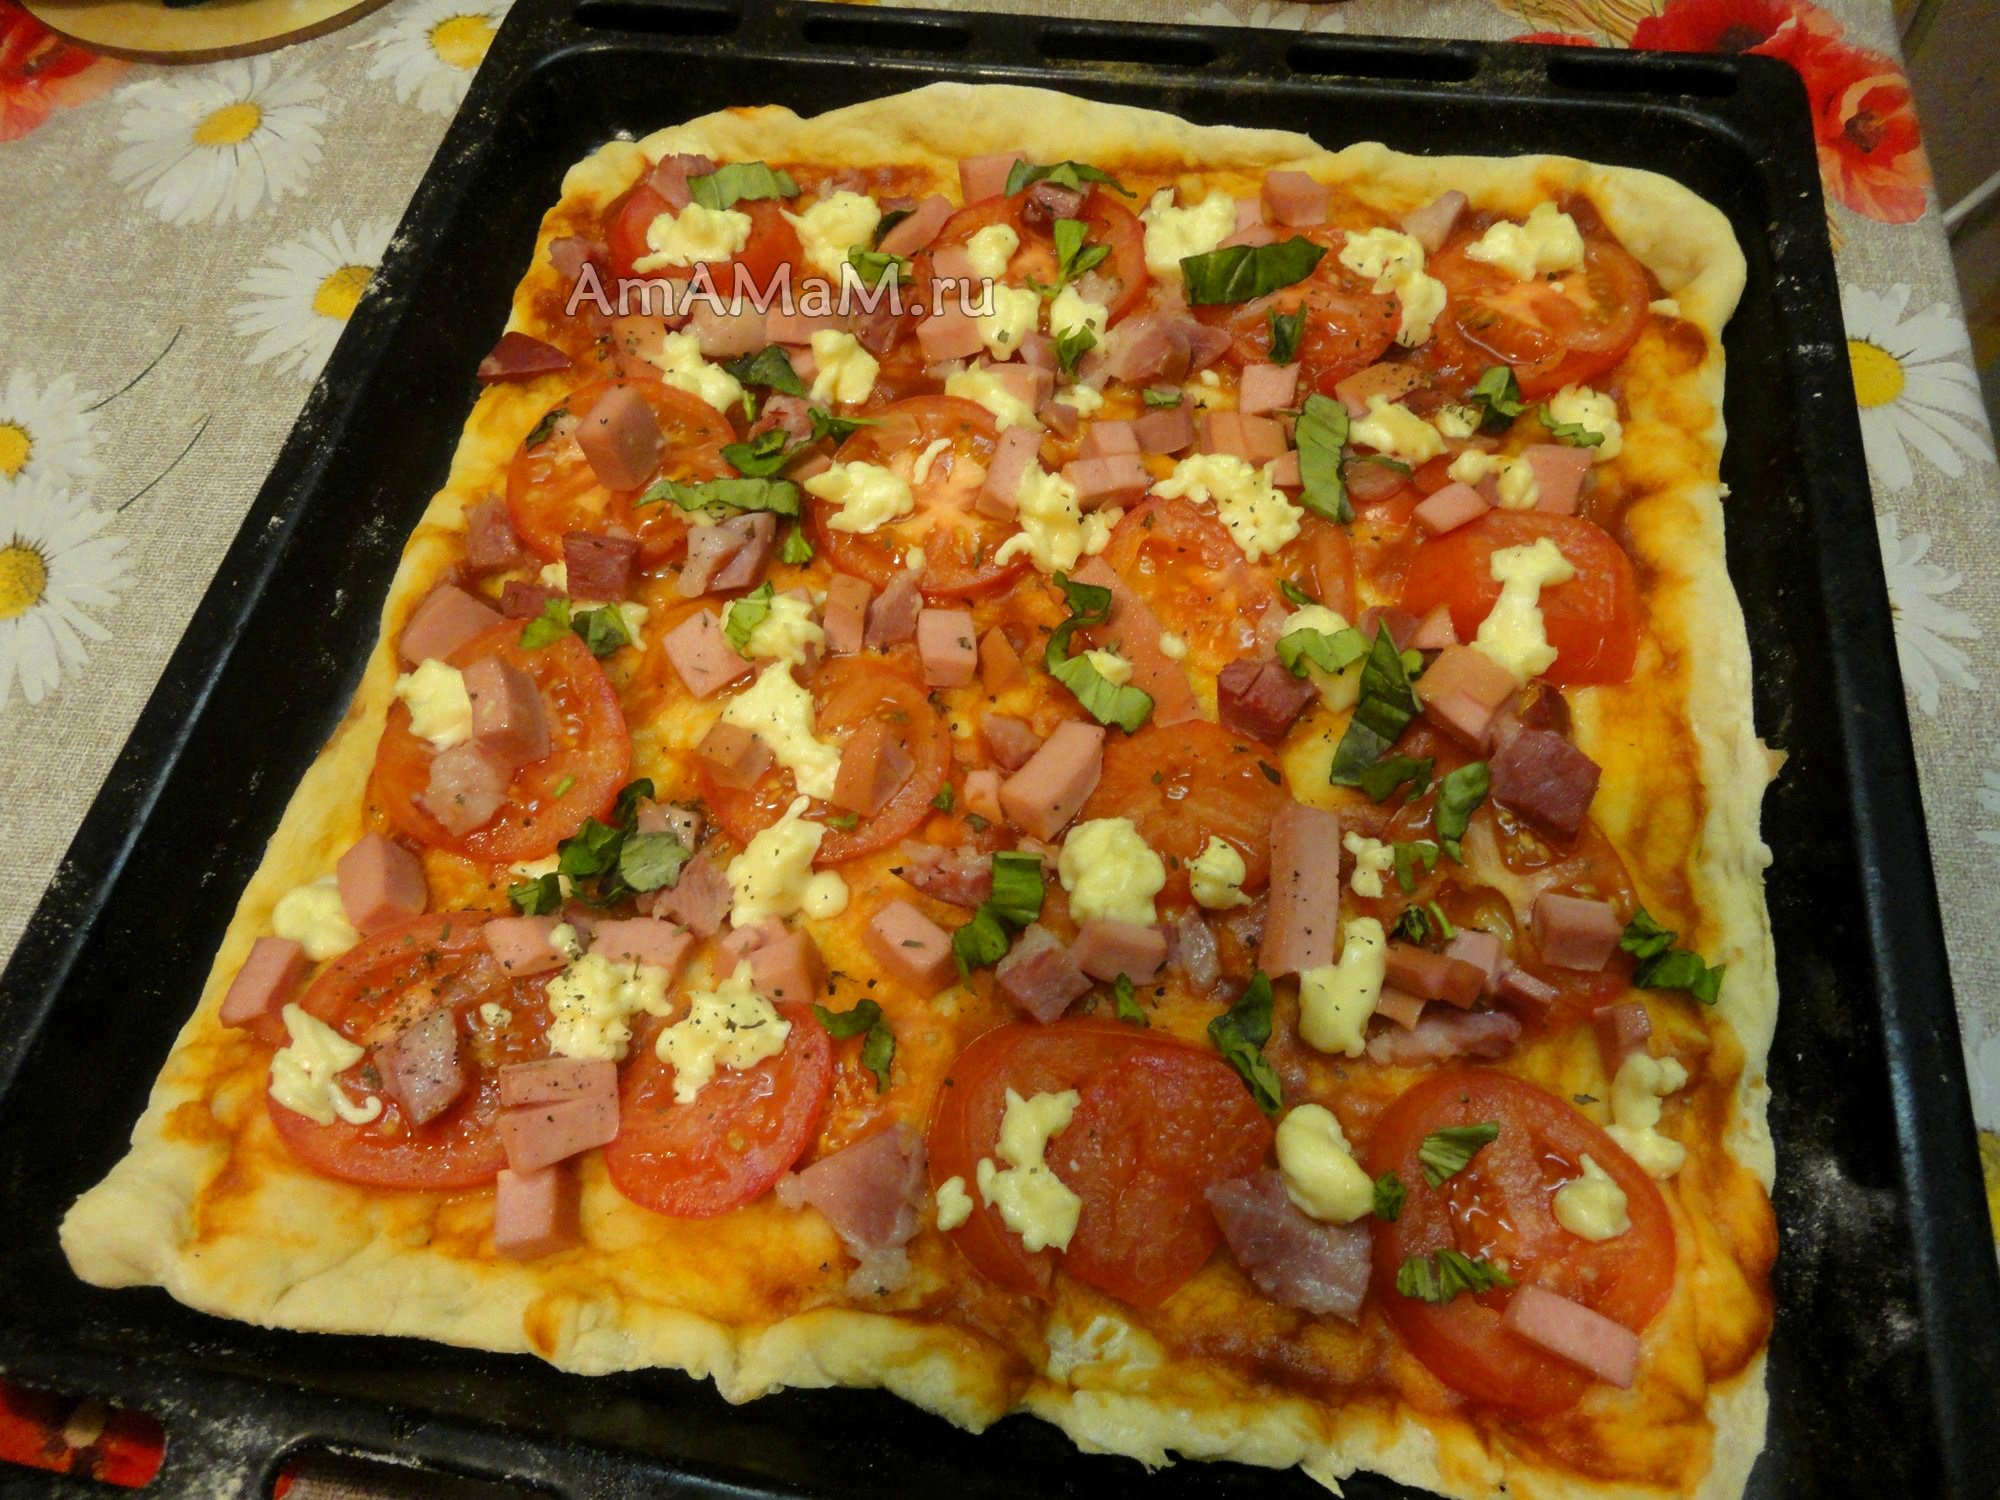 пицца домашняя с колбасой в духовке рецепт приготовления фото 99